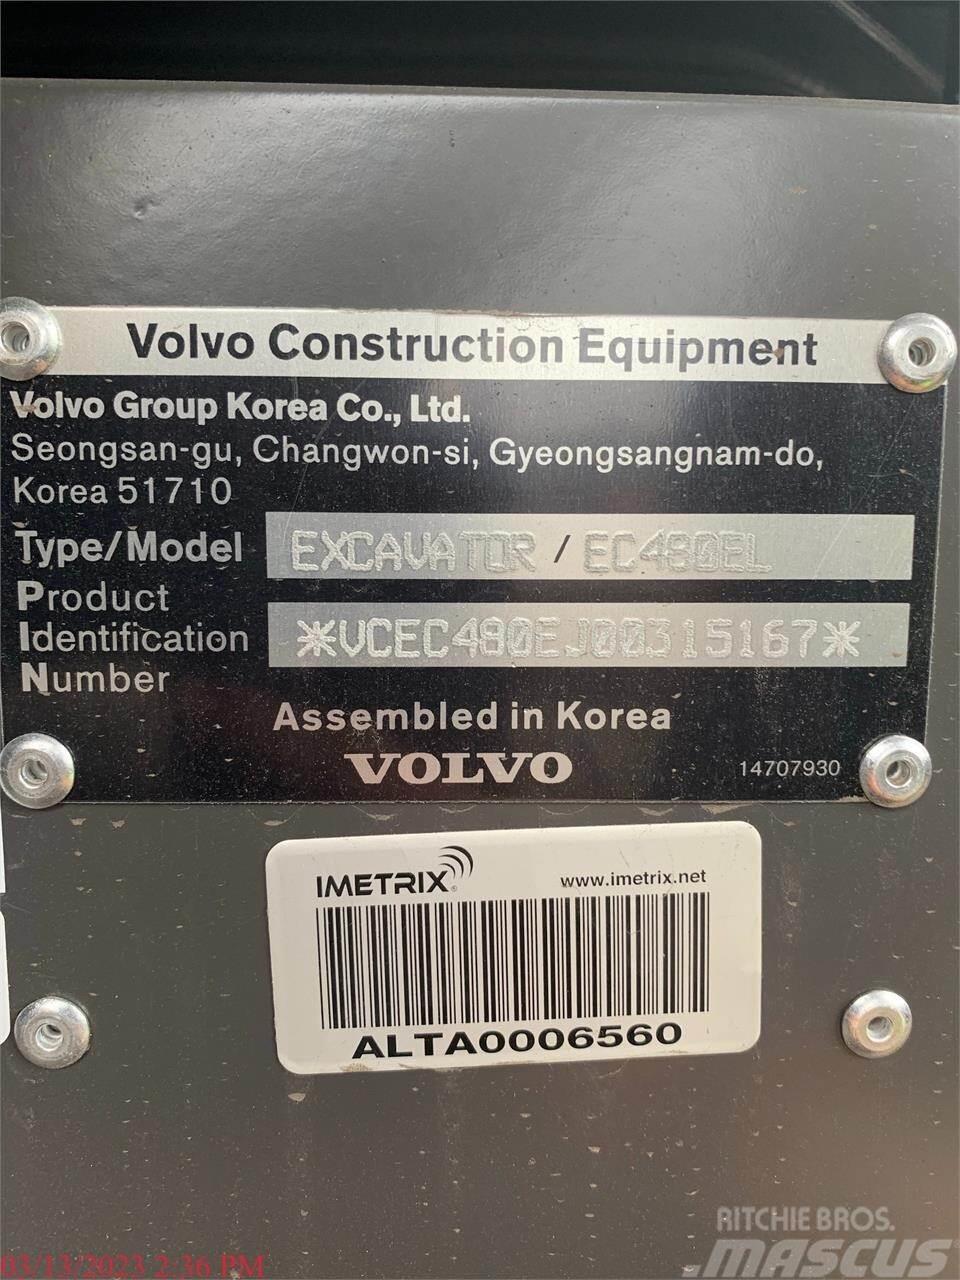 Volvo EC480EL Lánctalpas kotrók